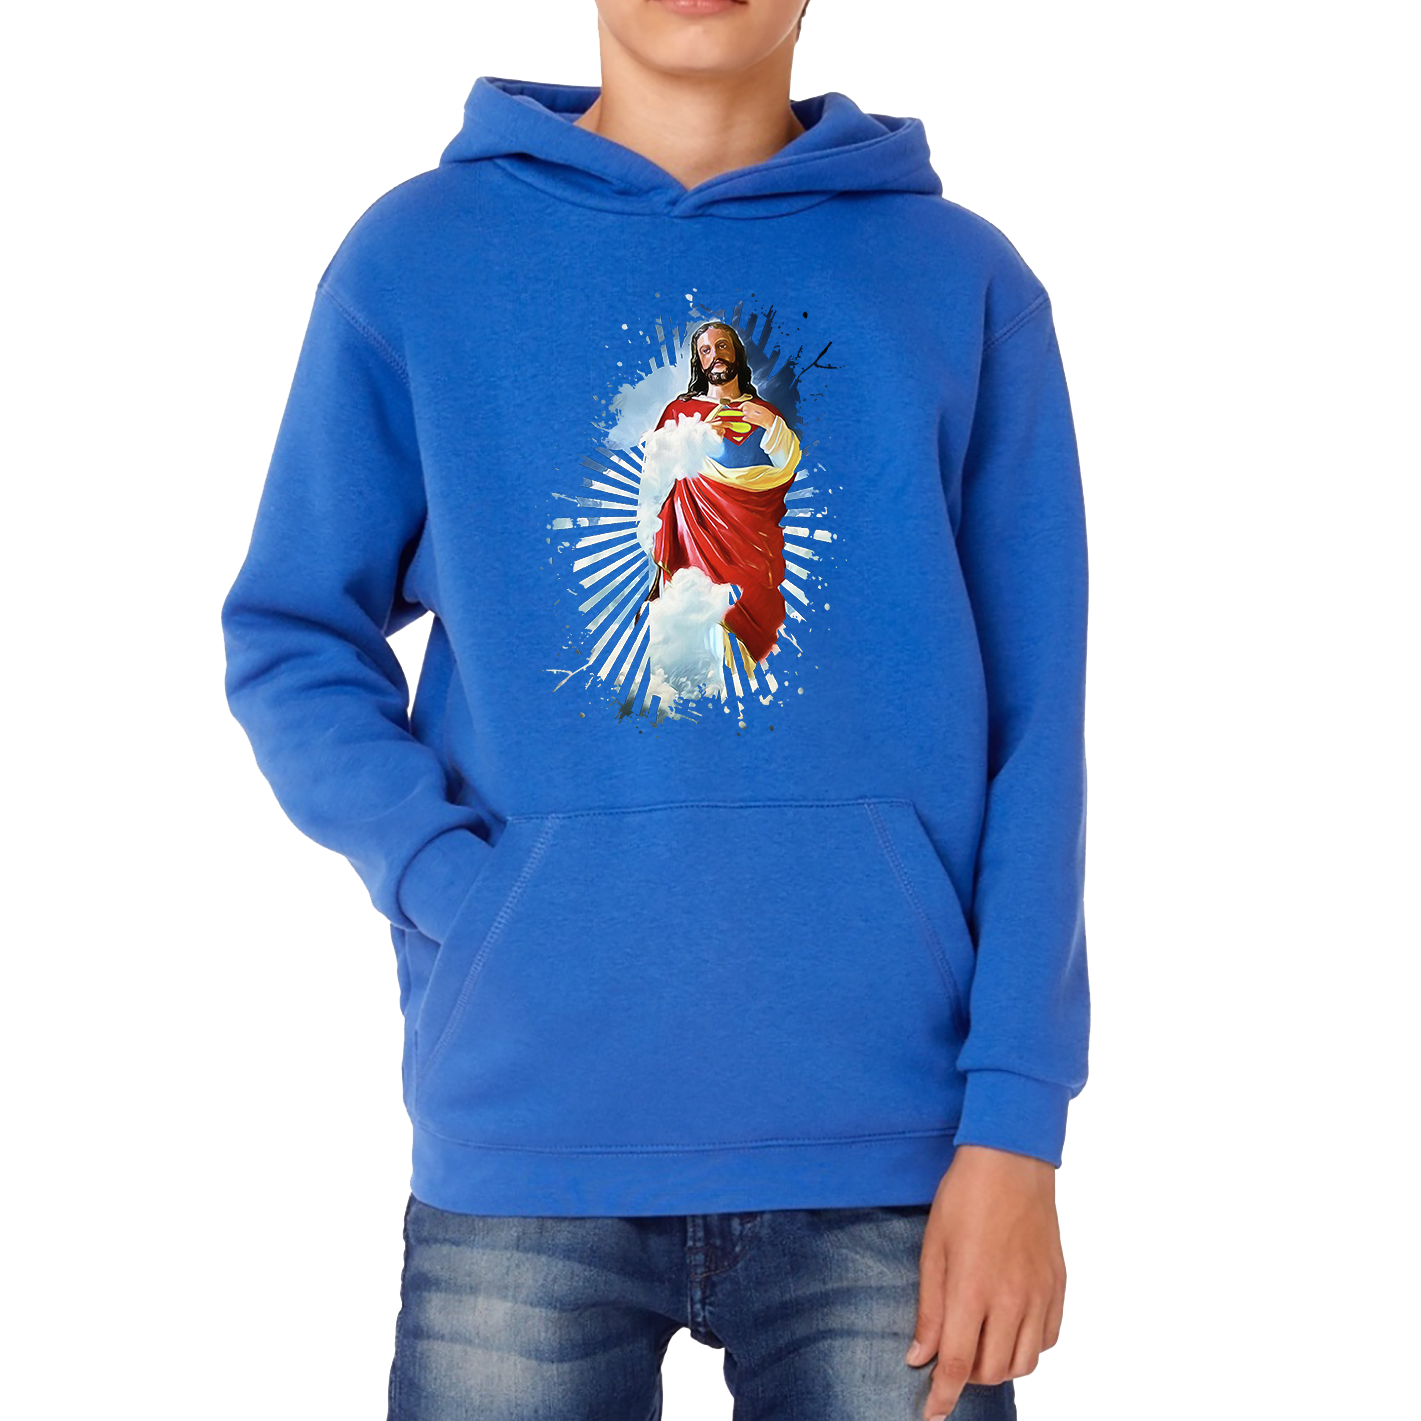 Jesus Christ Superman Hoodie Superman Inspired Spoof Avengers Superhero Christian Gift Kids Hoodie